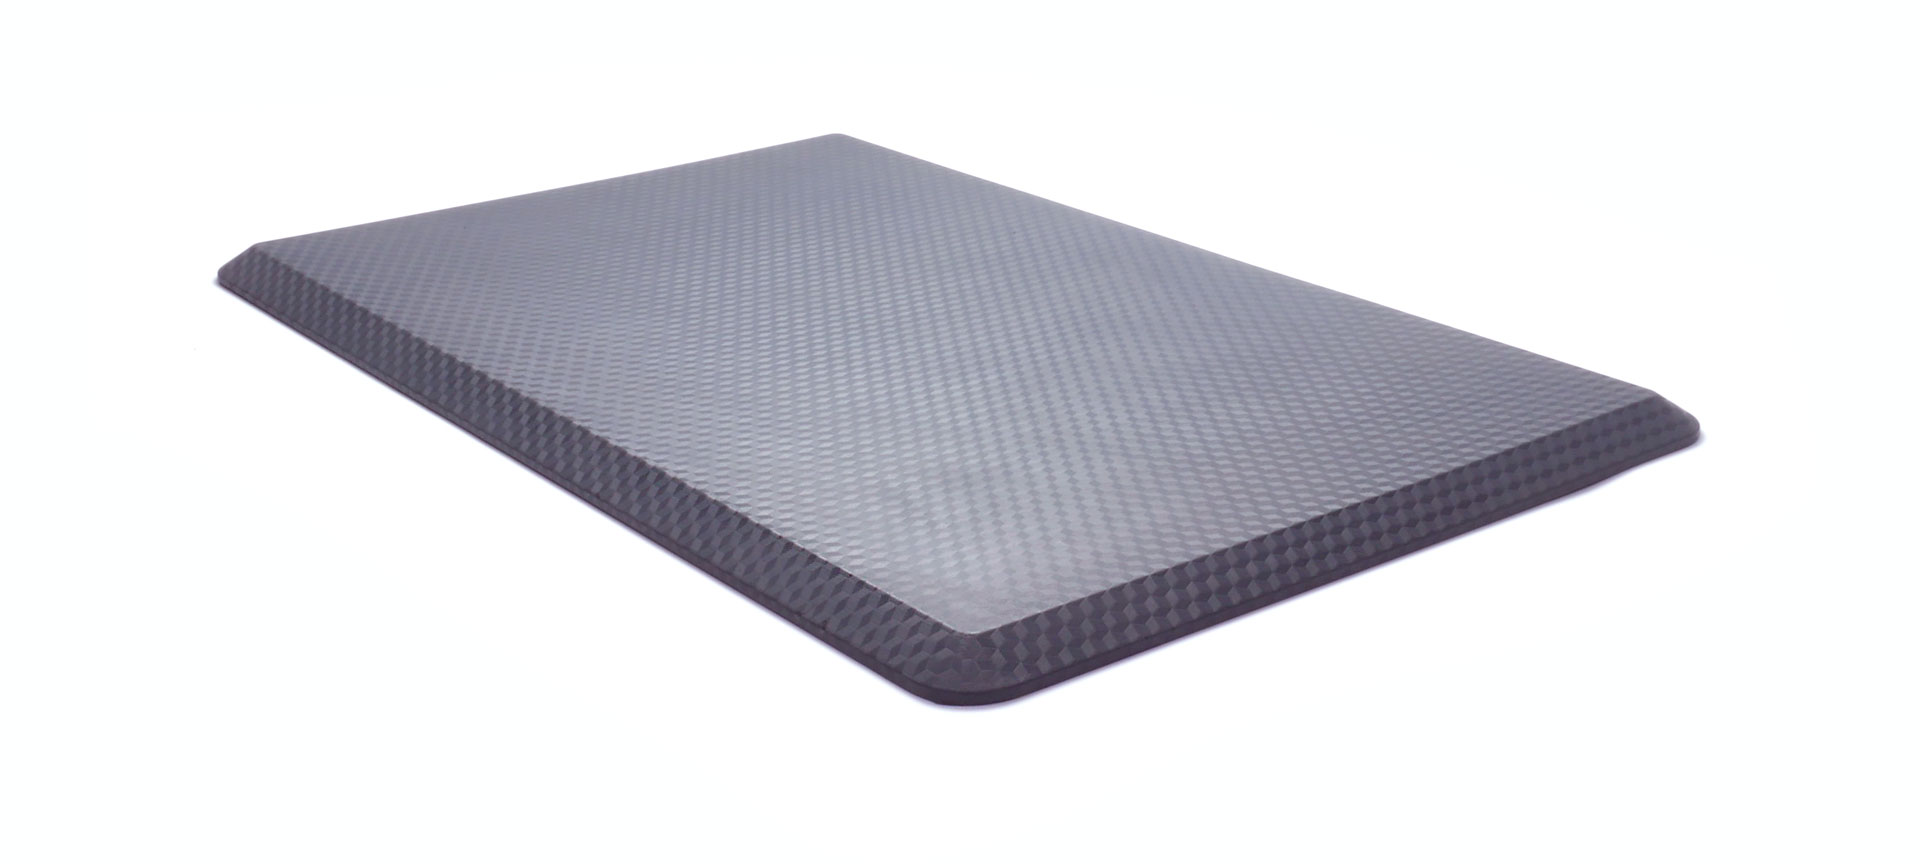 Comfort Soft anti-fatigue standing mat